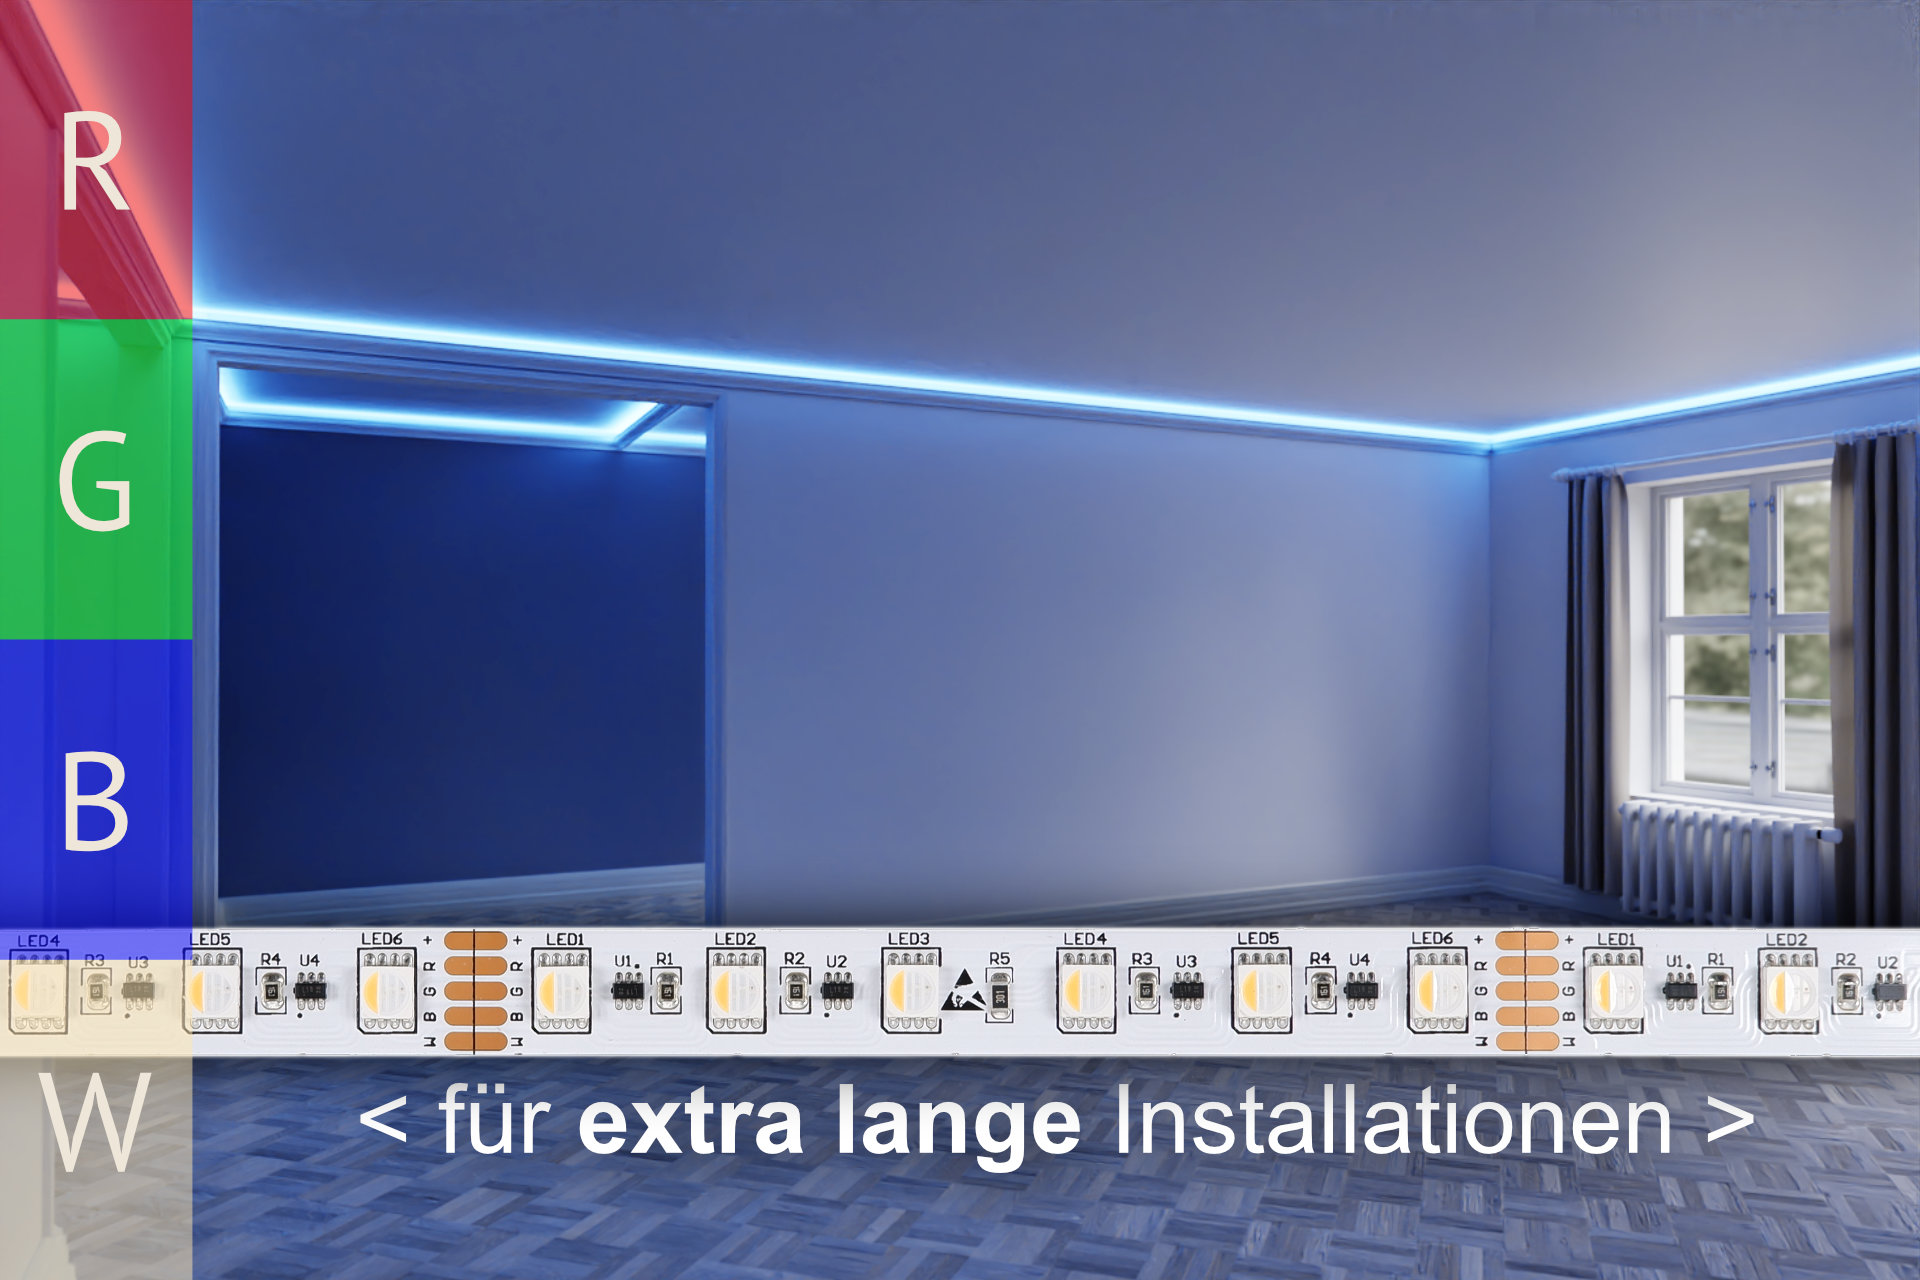 RGBWW mit KSQ für extra lange Installationen - 60 LED/m